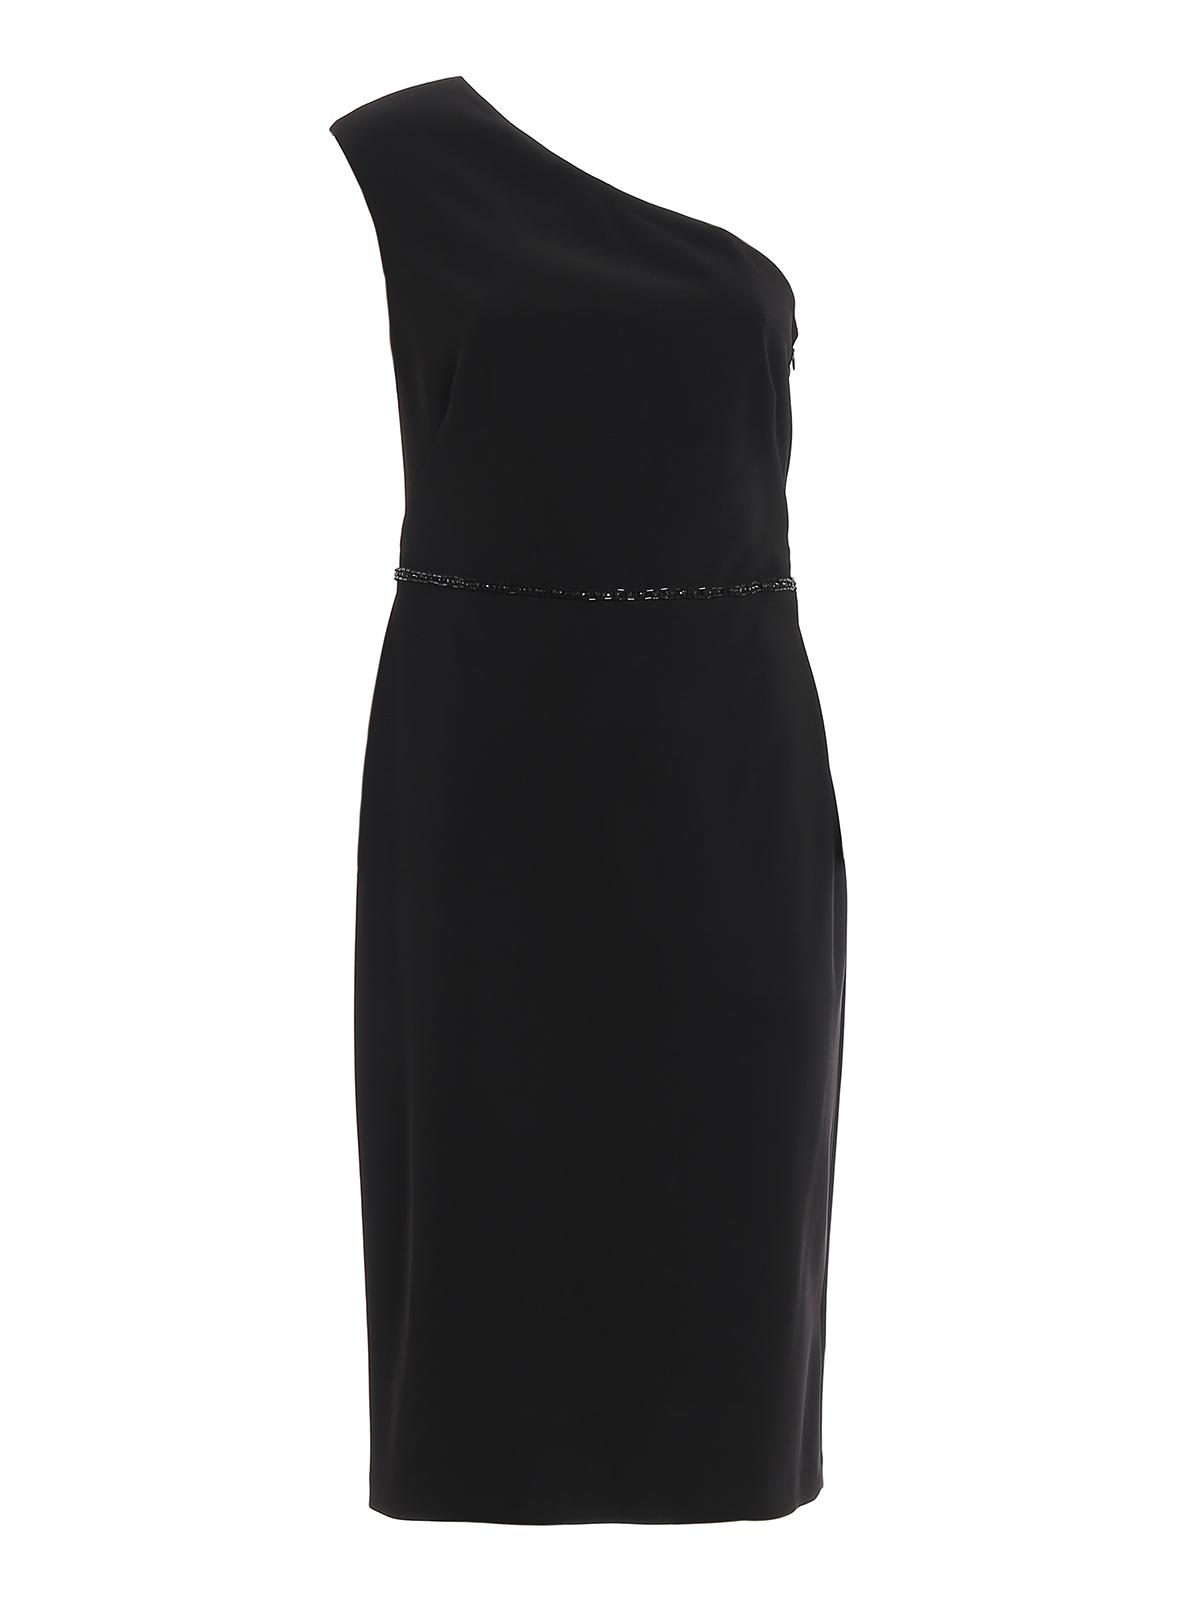 Lauren by Ralph Lauren Beaded One-shoulder Dress in Black - Lyst